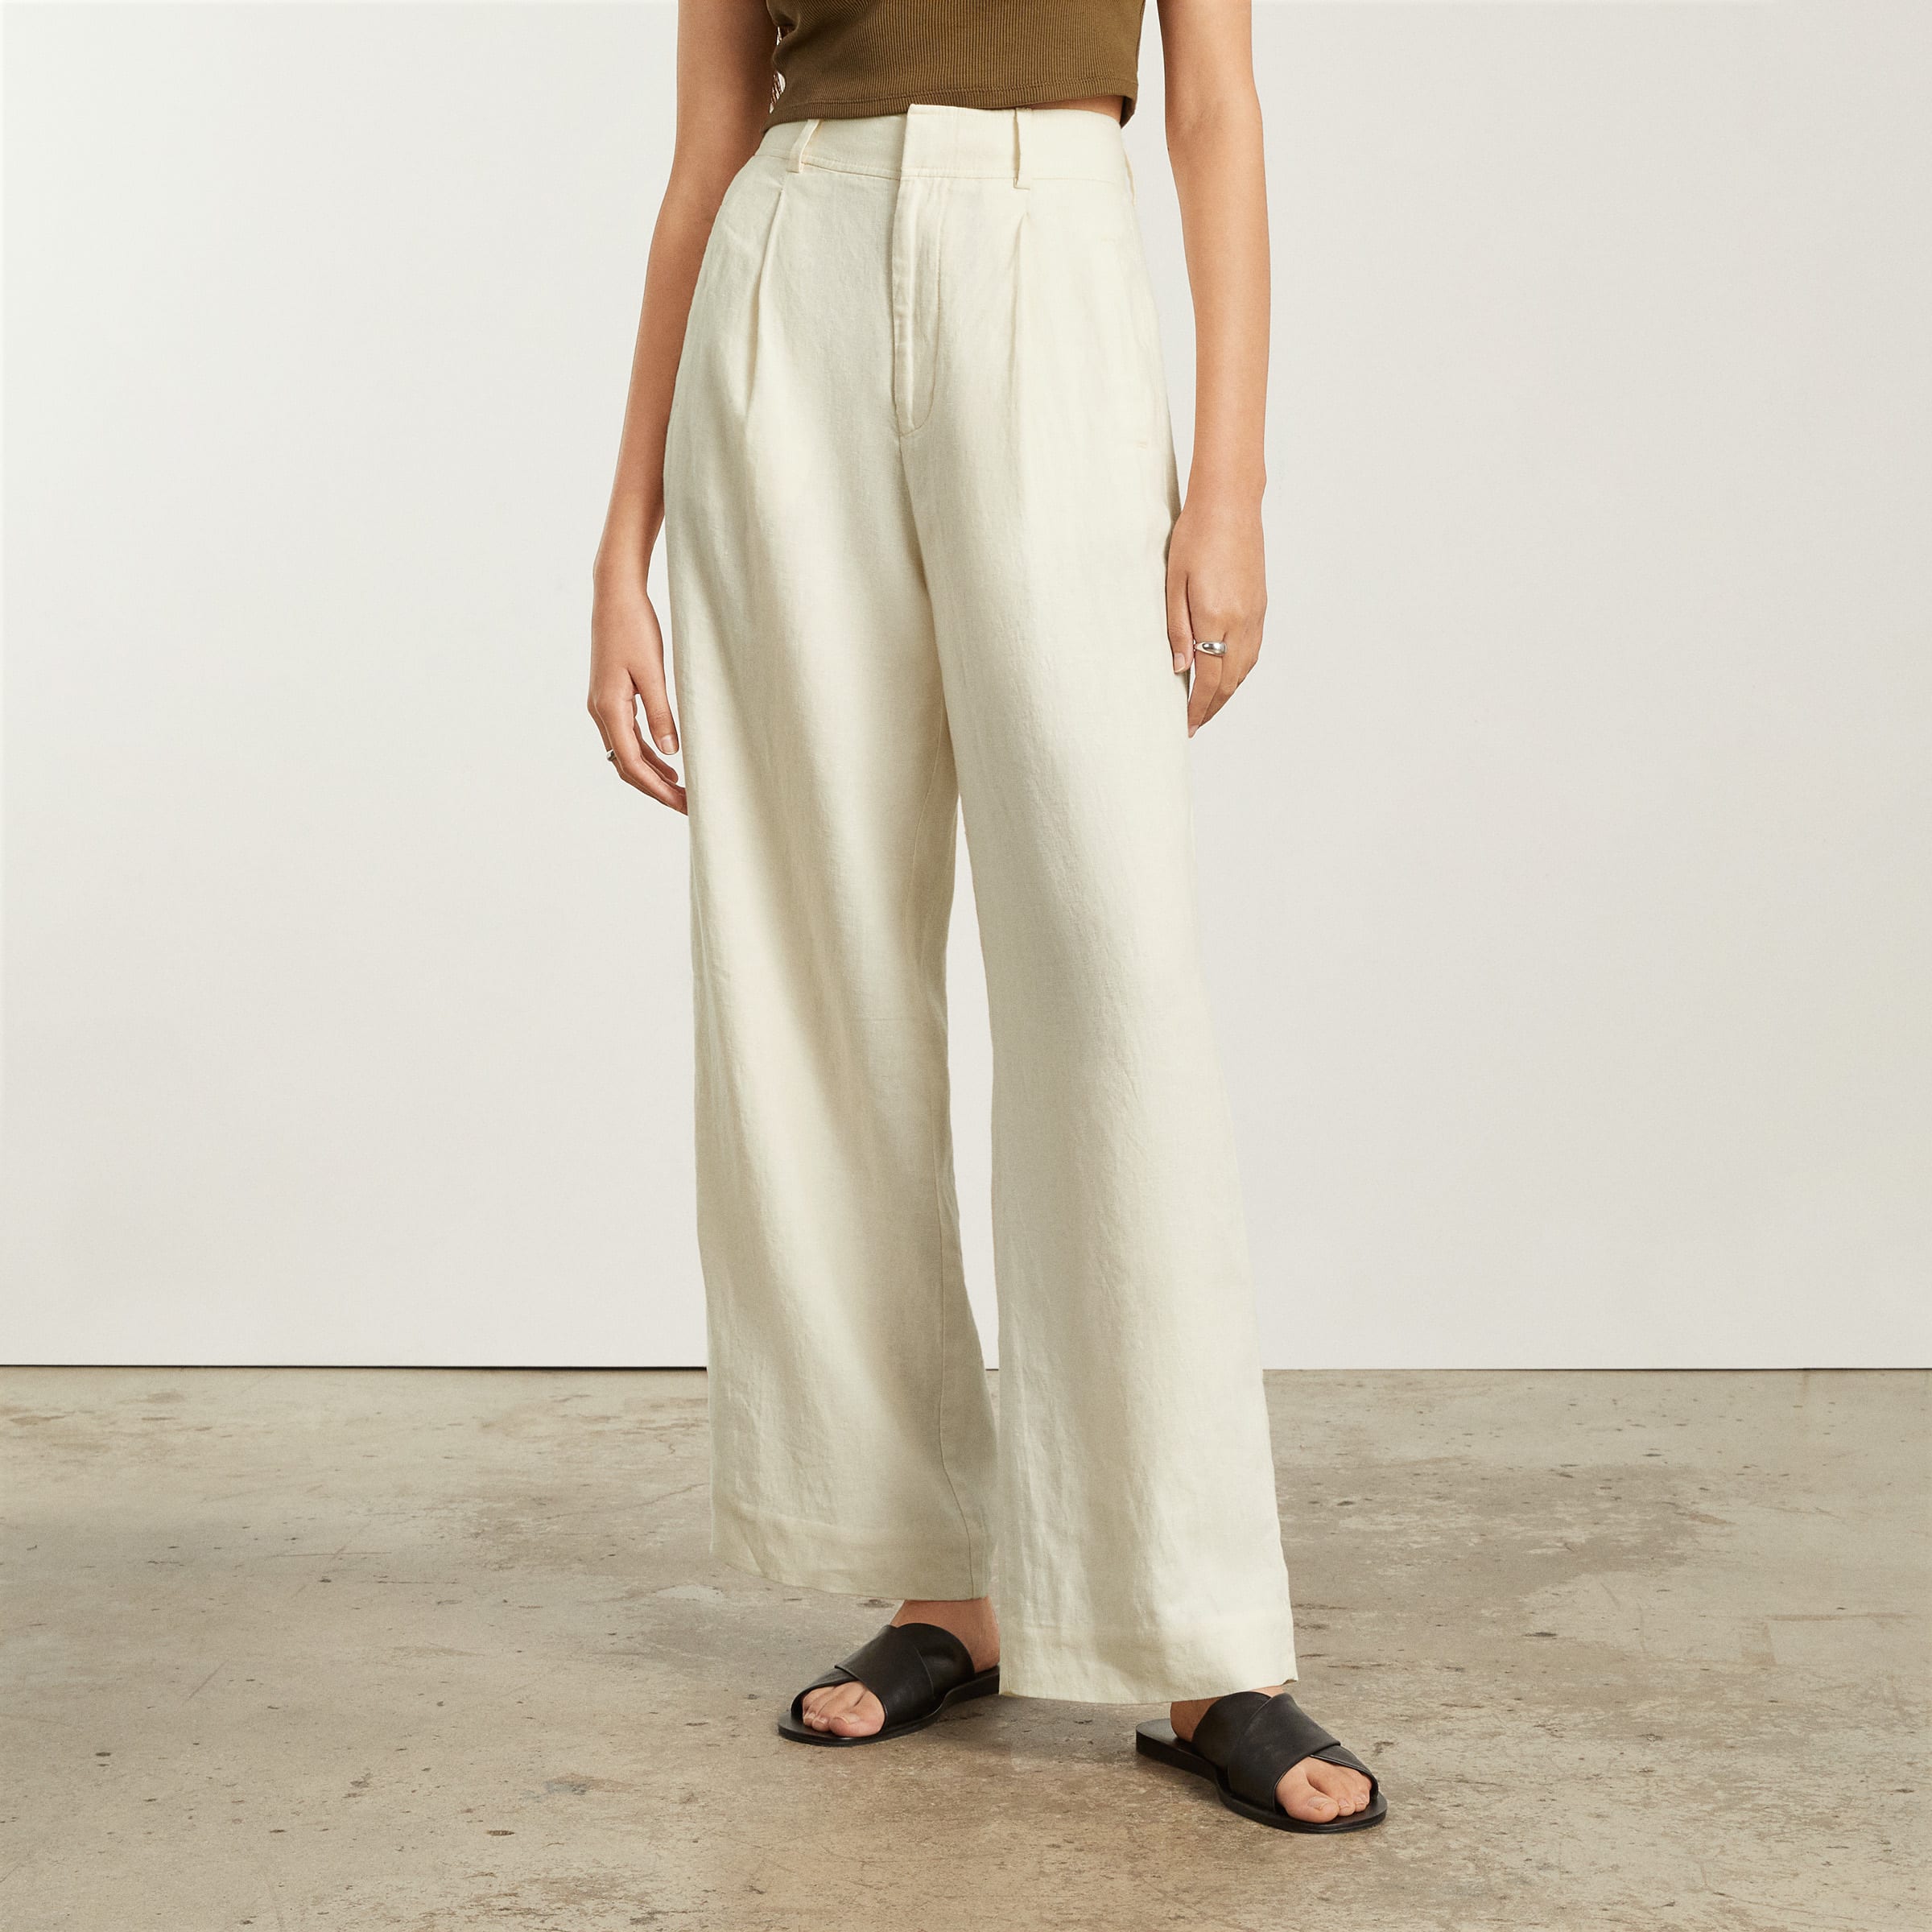 Modern Linen Pants for Women - 100% Linen